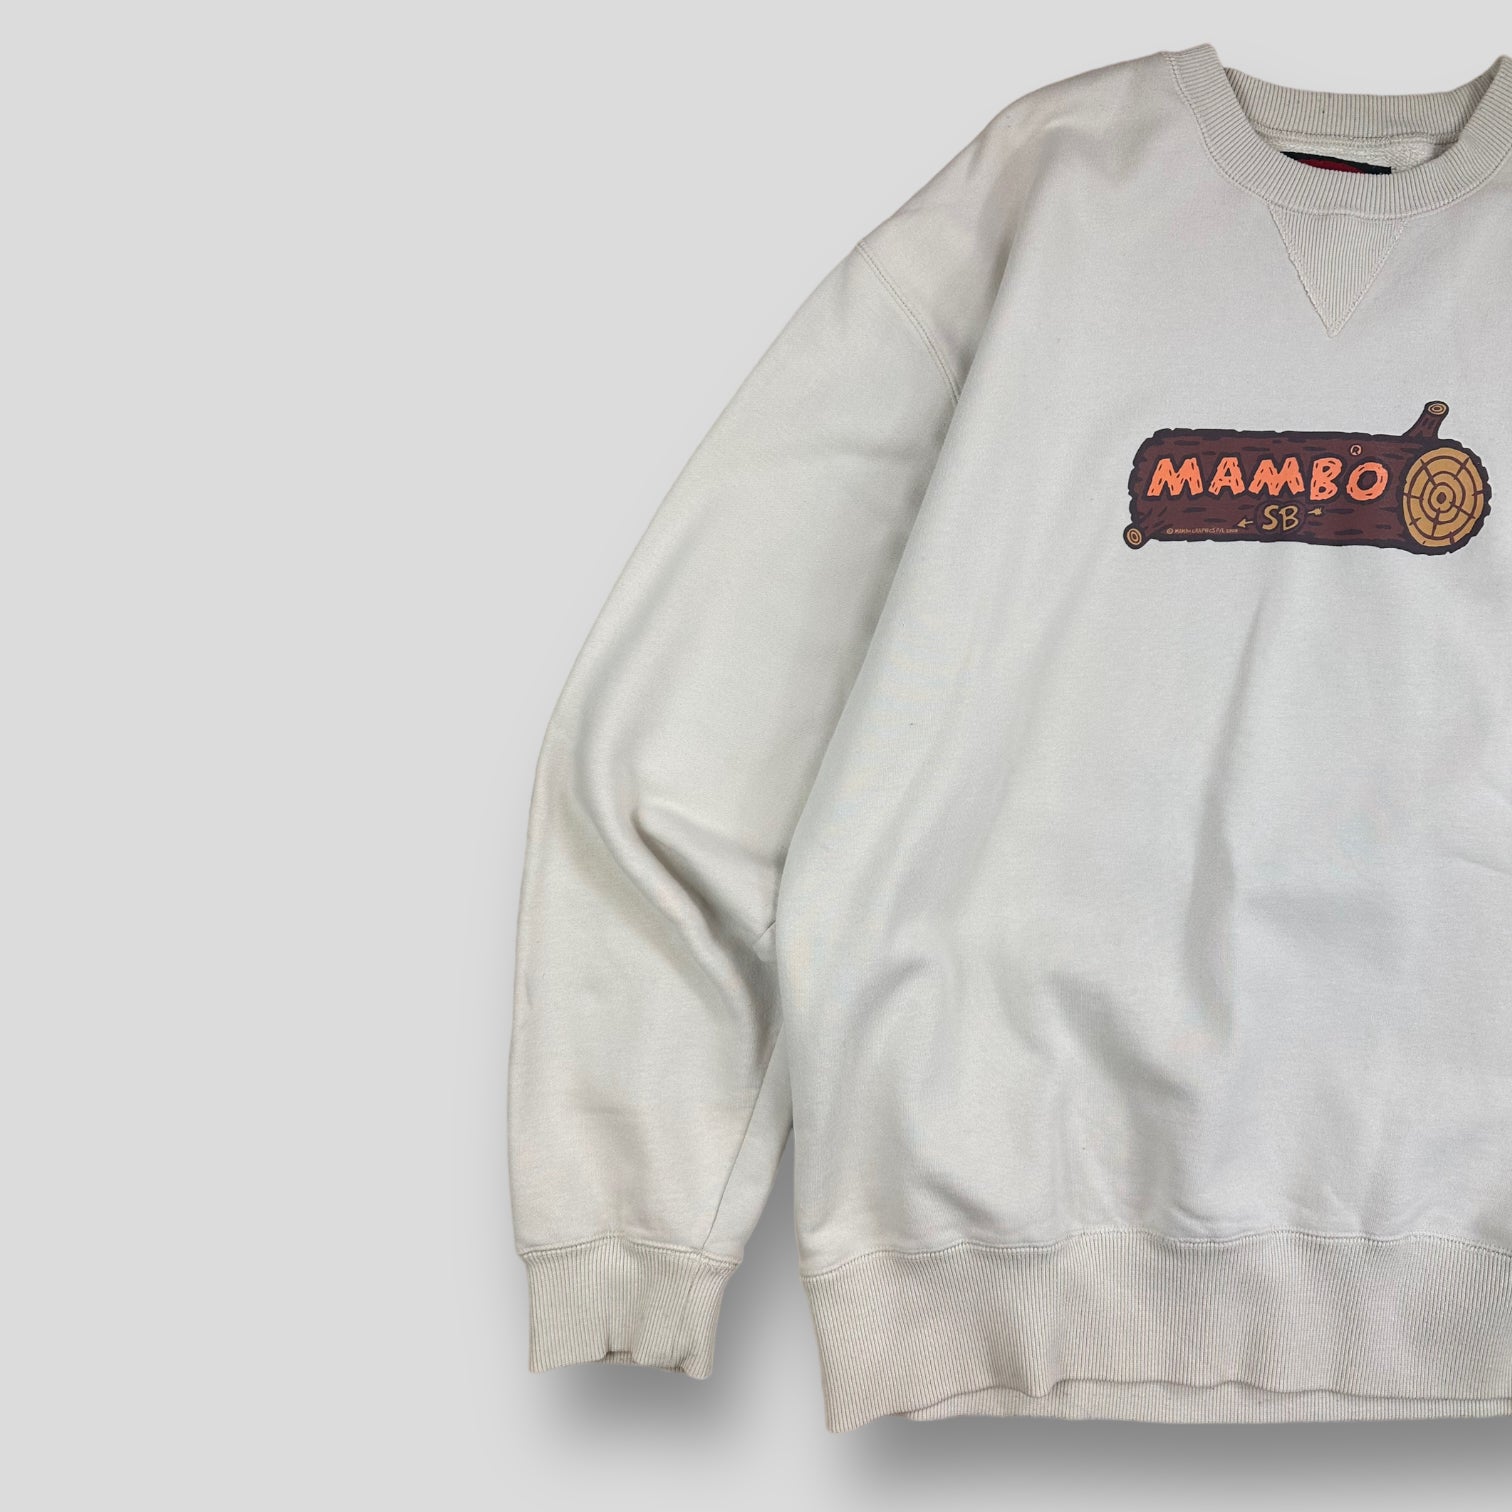 Mambo hoodie